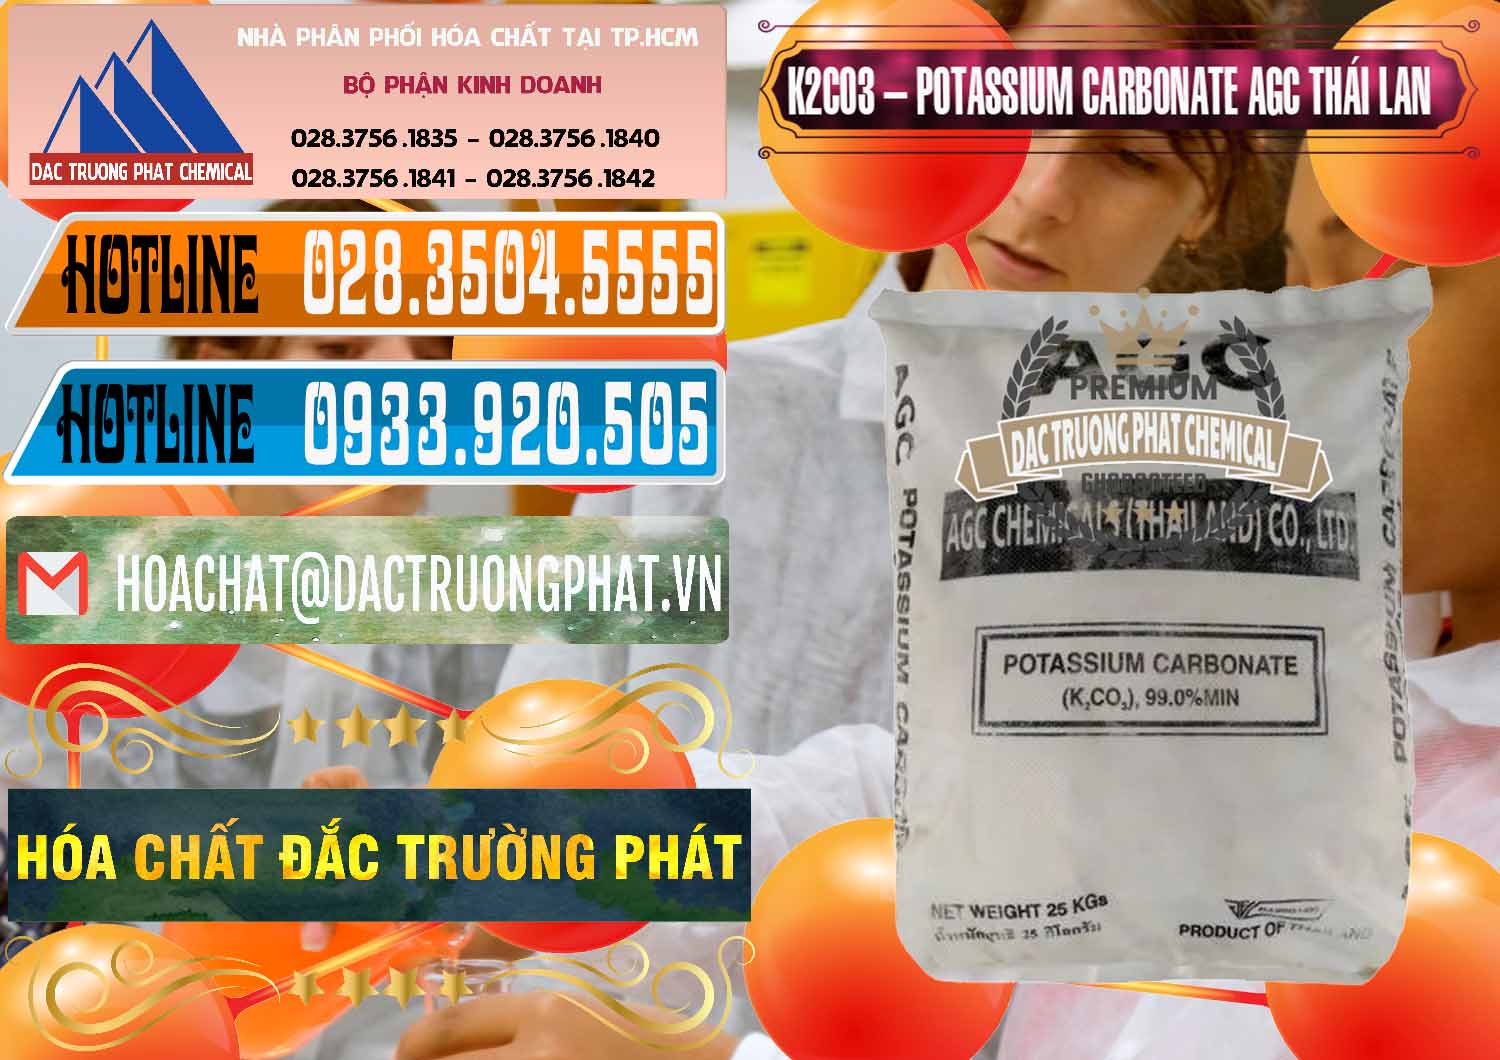 Cty bán - cung cấp K2Co3 – Potassium Carbonate AGC Thái Lan Thailand - 0471 - Công ty cung cấp và phân phối hóa chất tại TP.HCM - stmp.net